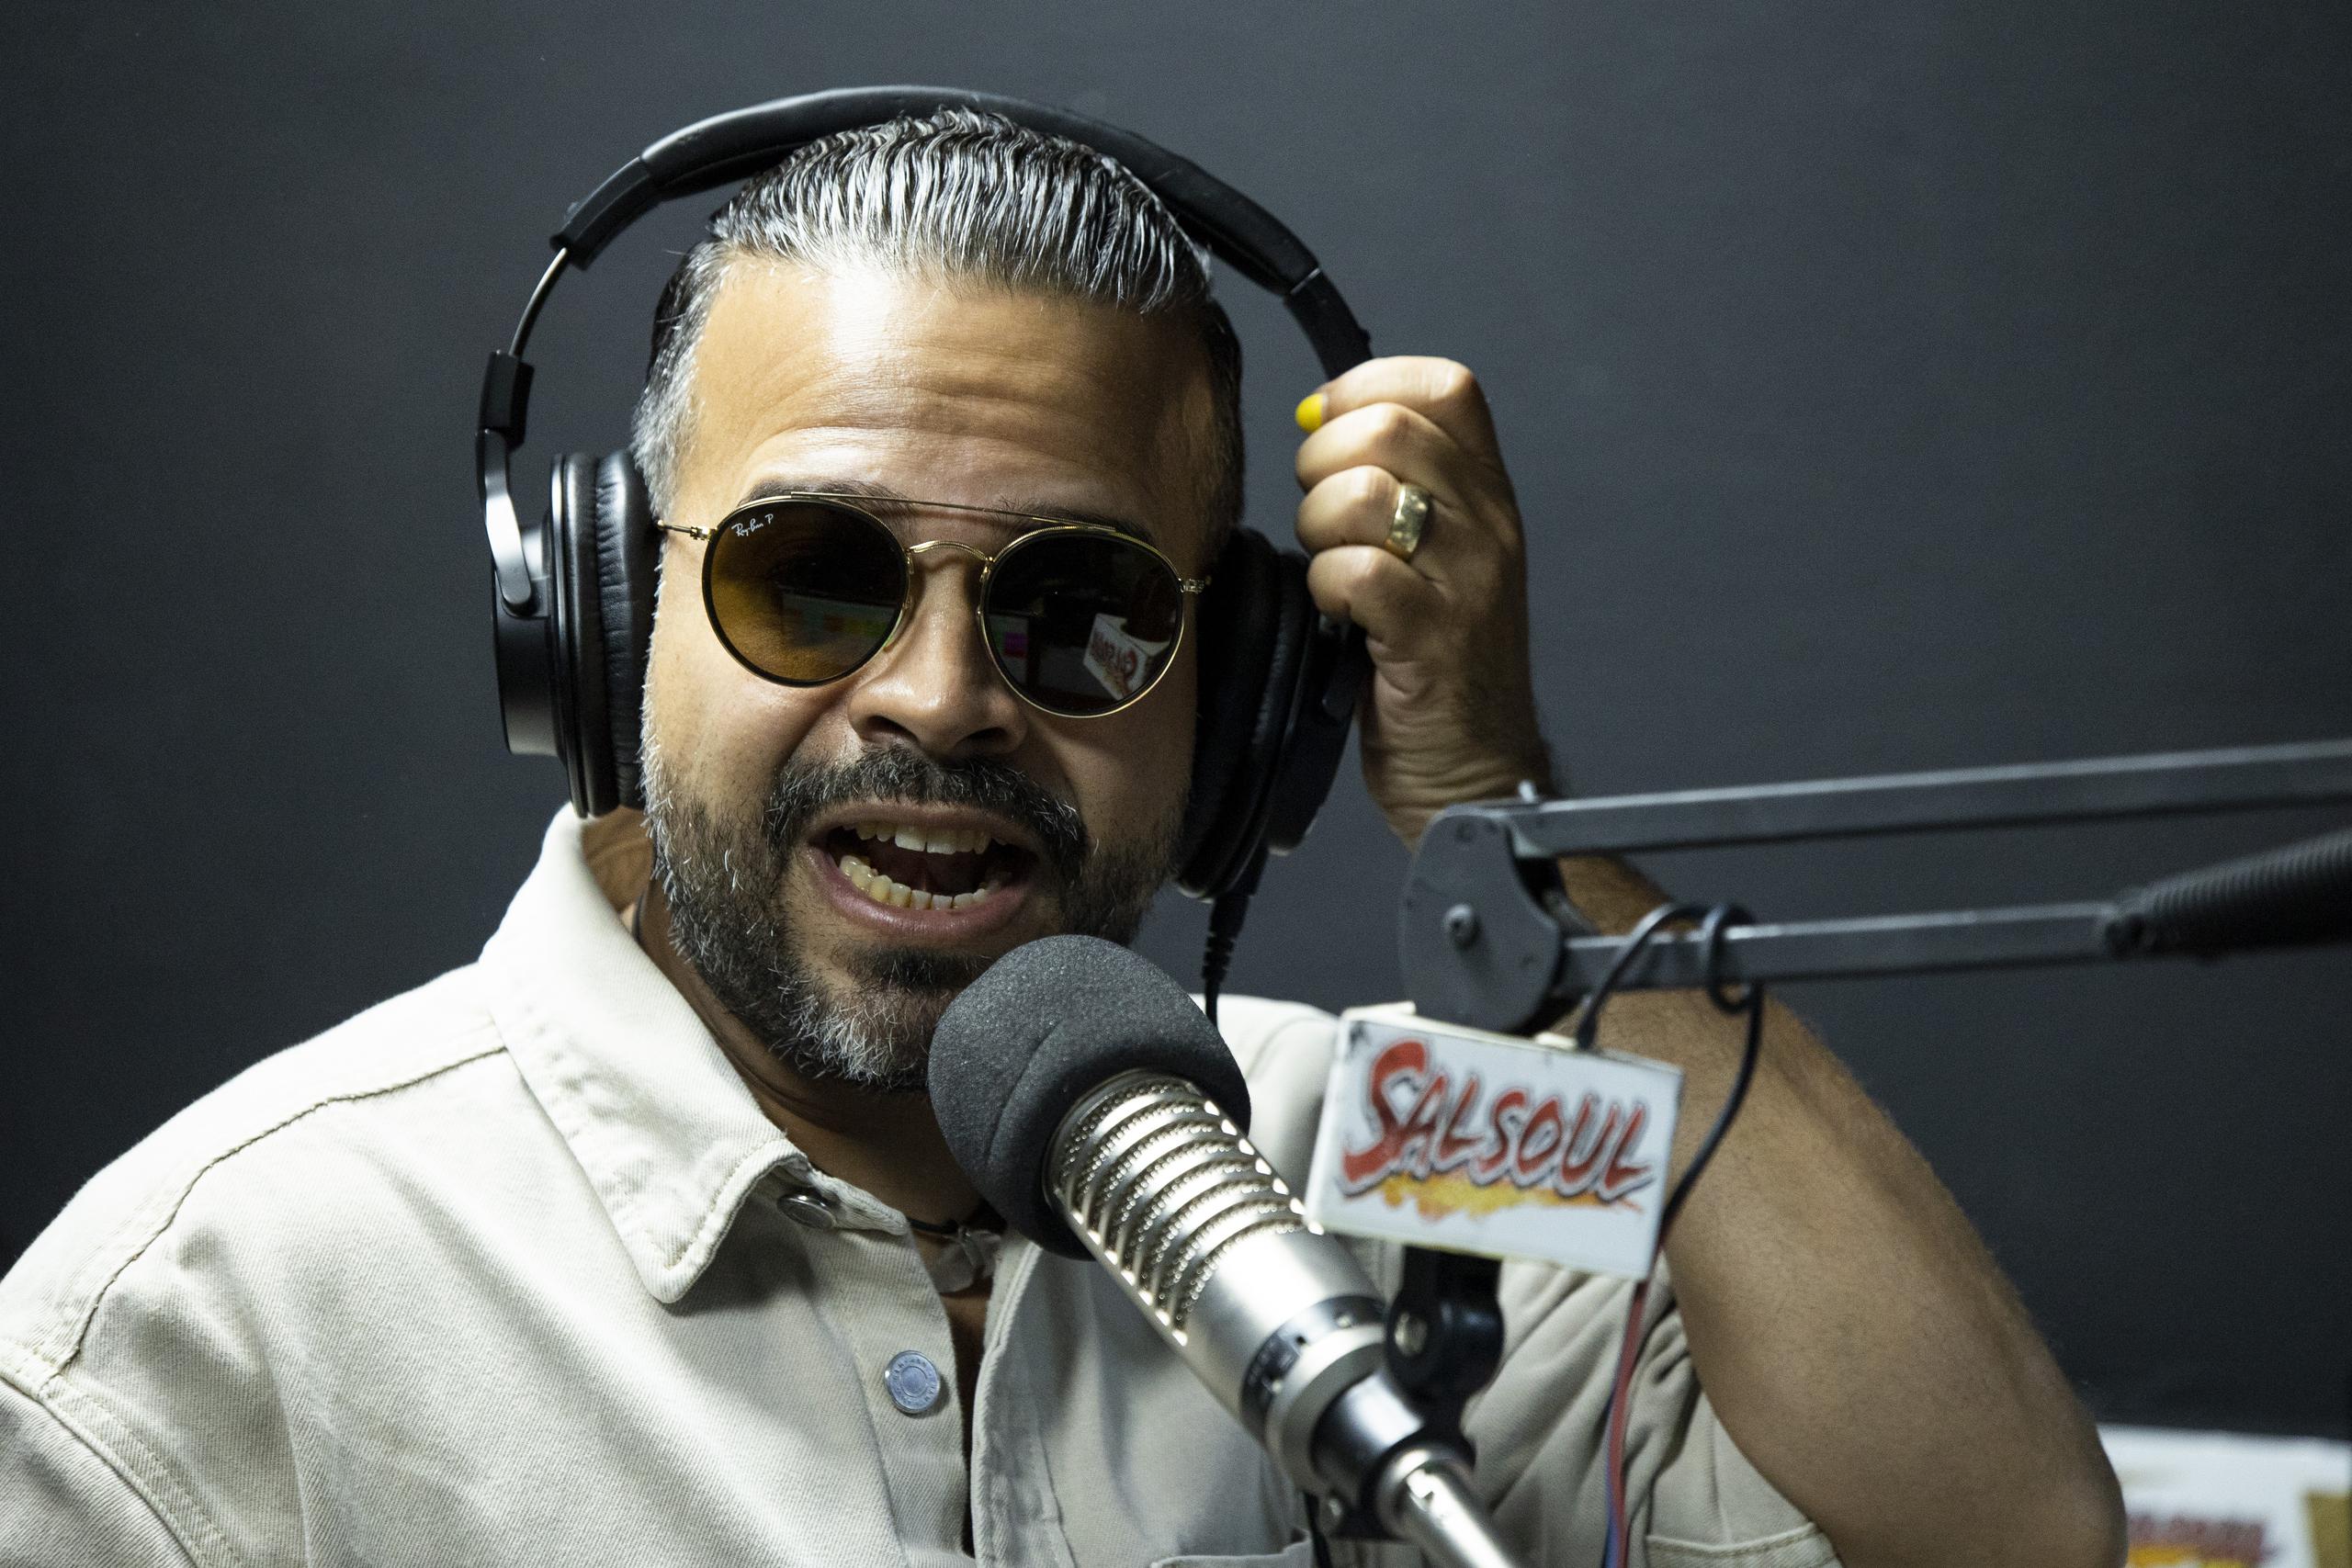 Gerardo Rivas anima de lunes a viernes por Salsoul el programa "El chamaquito de al lado".